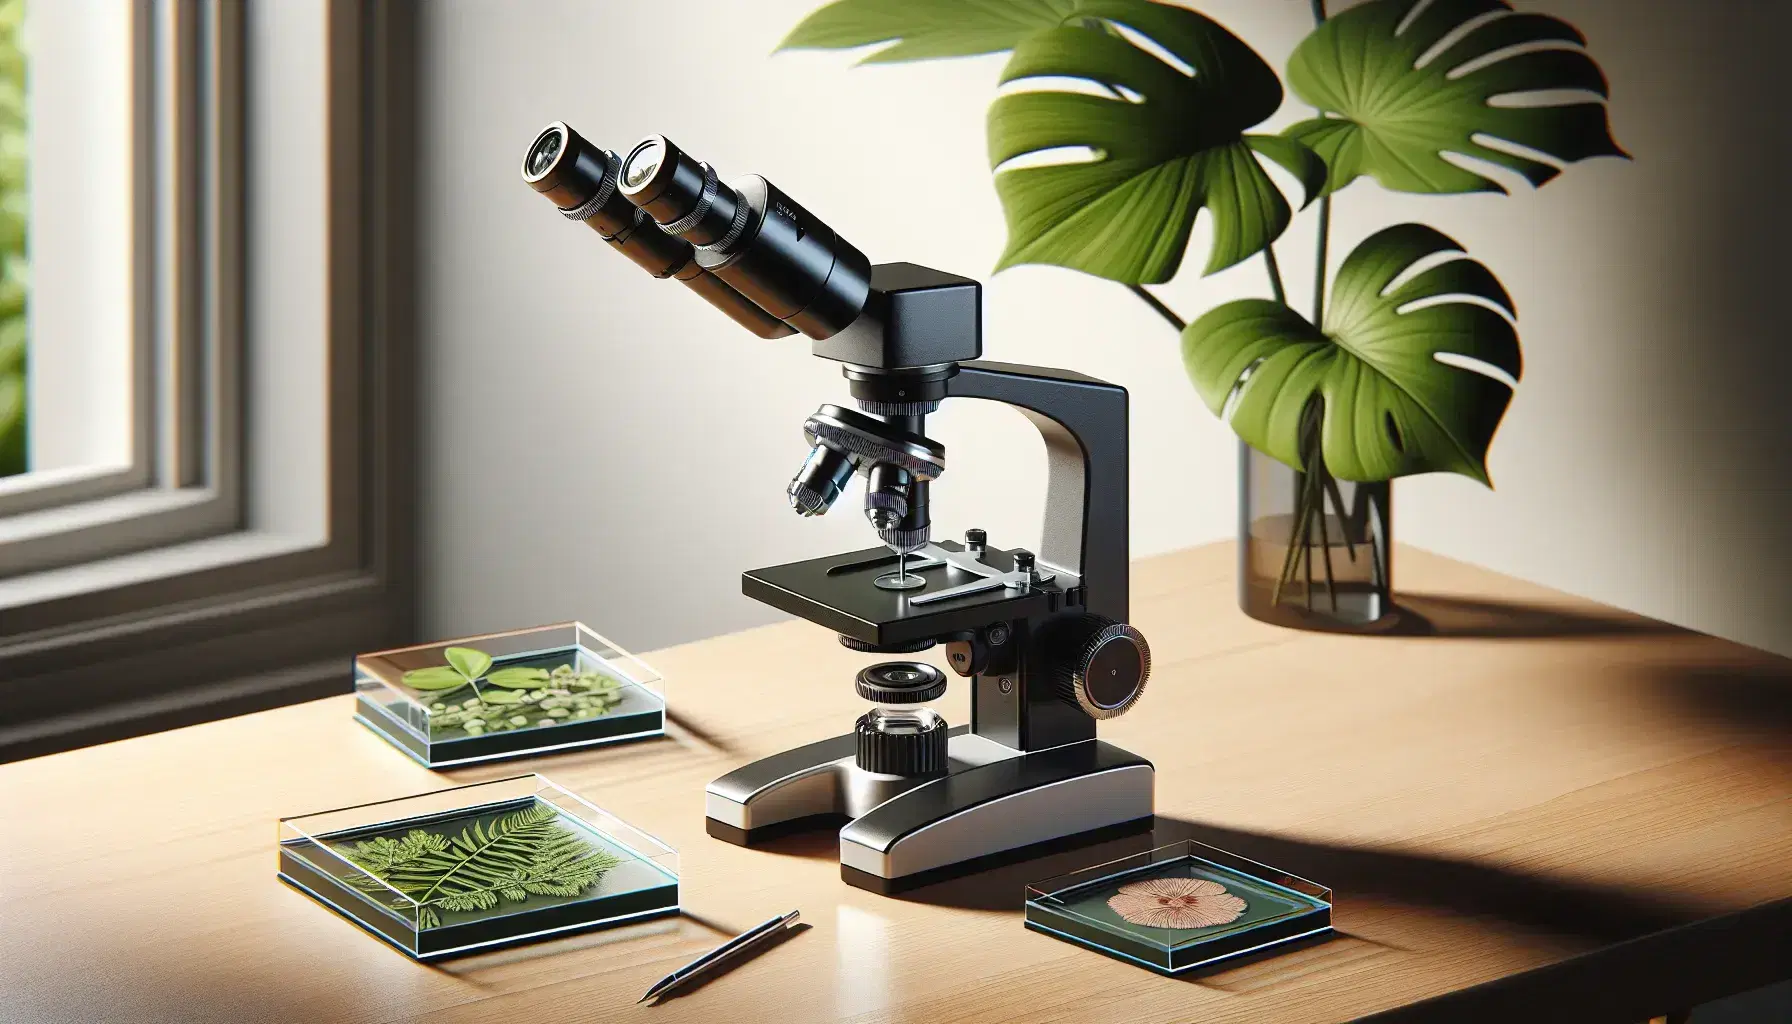 Microscopio ottico nero e argento su tavolo in legno chiaro con tre lenti, portaoggetti e vetrini con campioni biologici, sfondo con pianta verde.